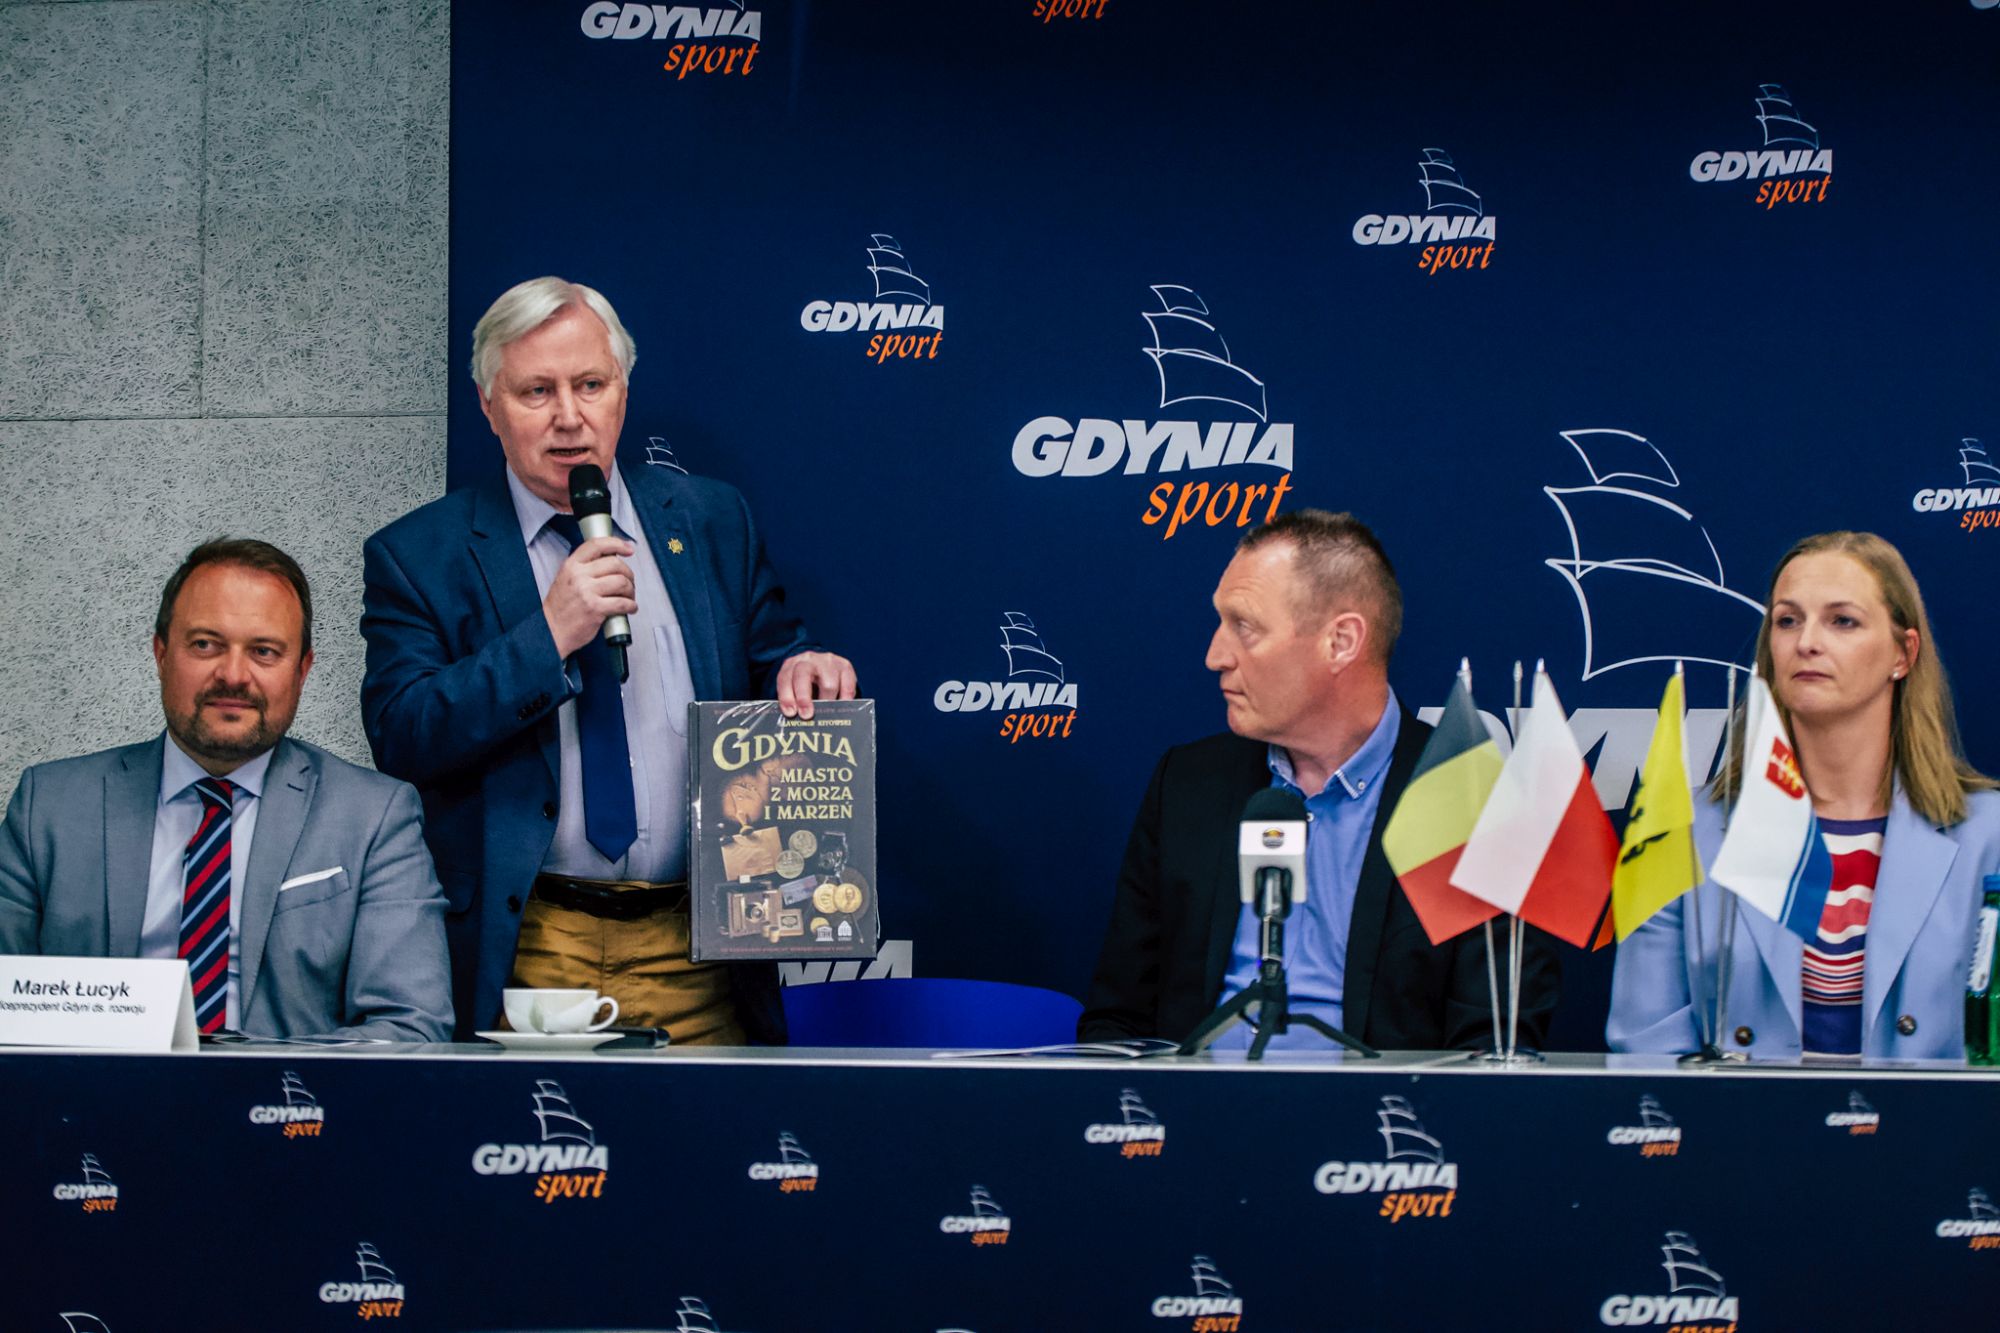 prezes Bogusław Witkowski wręczający trenerowi książkę o Gdyni